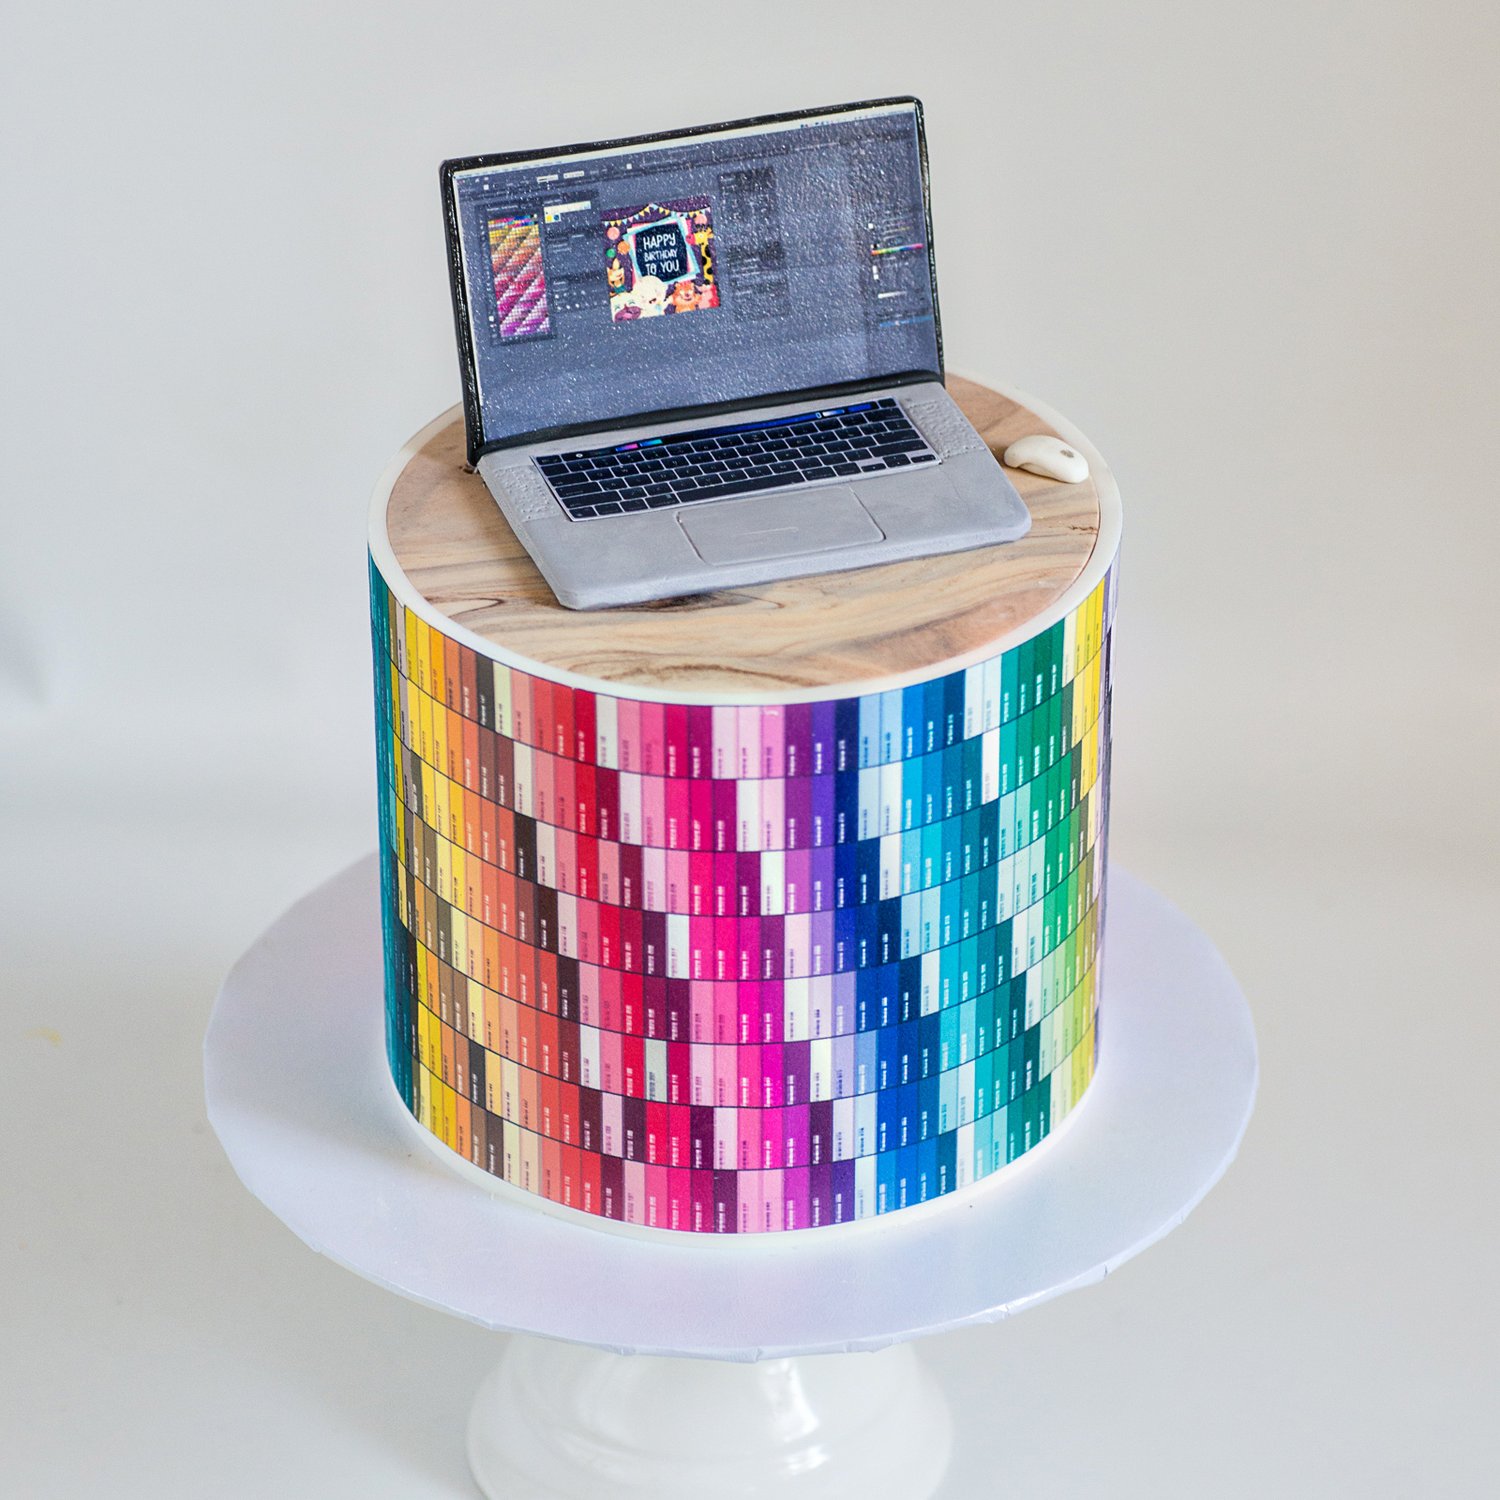 Pantone Graphic design cake